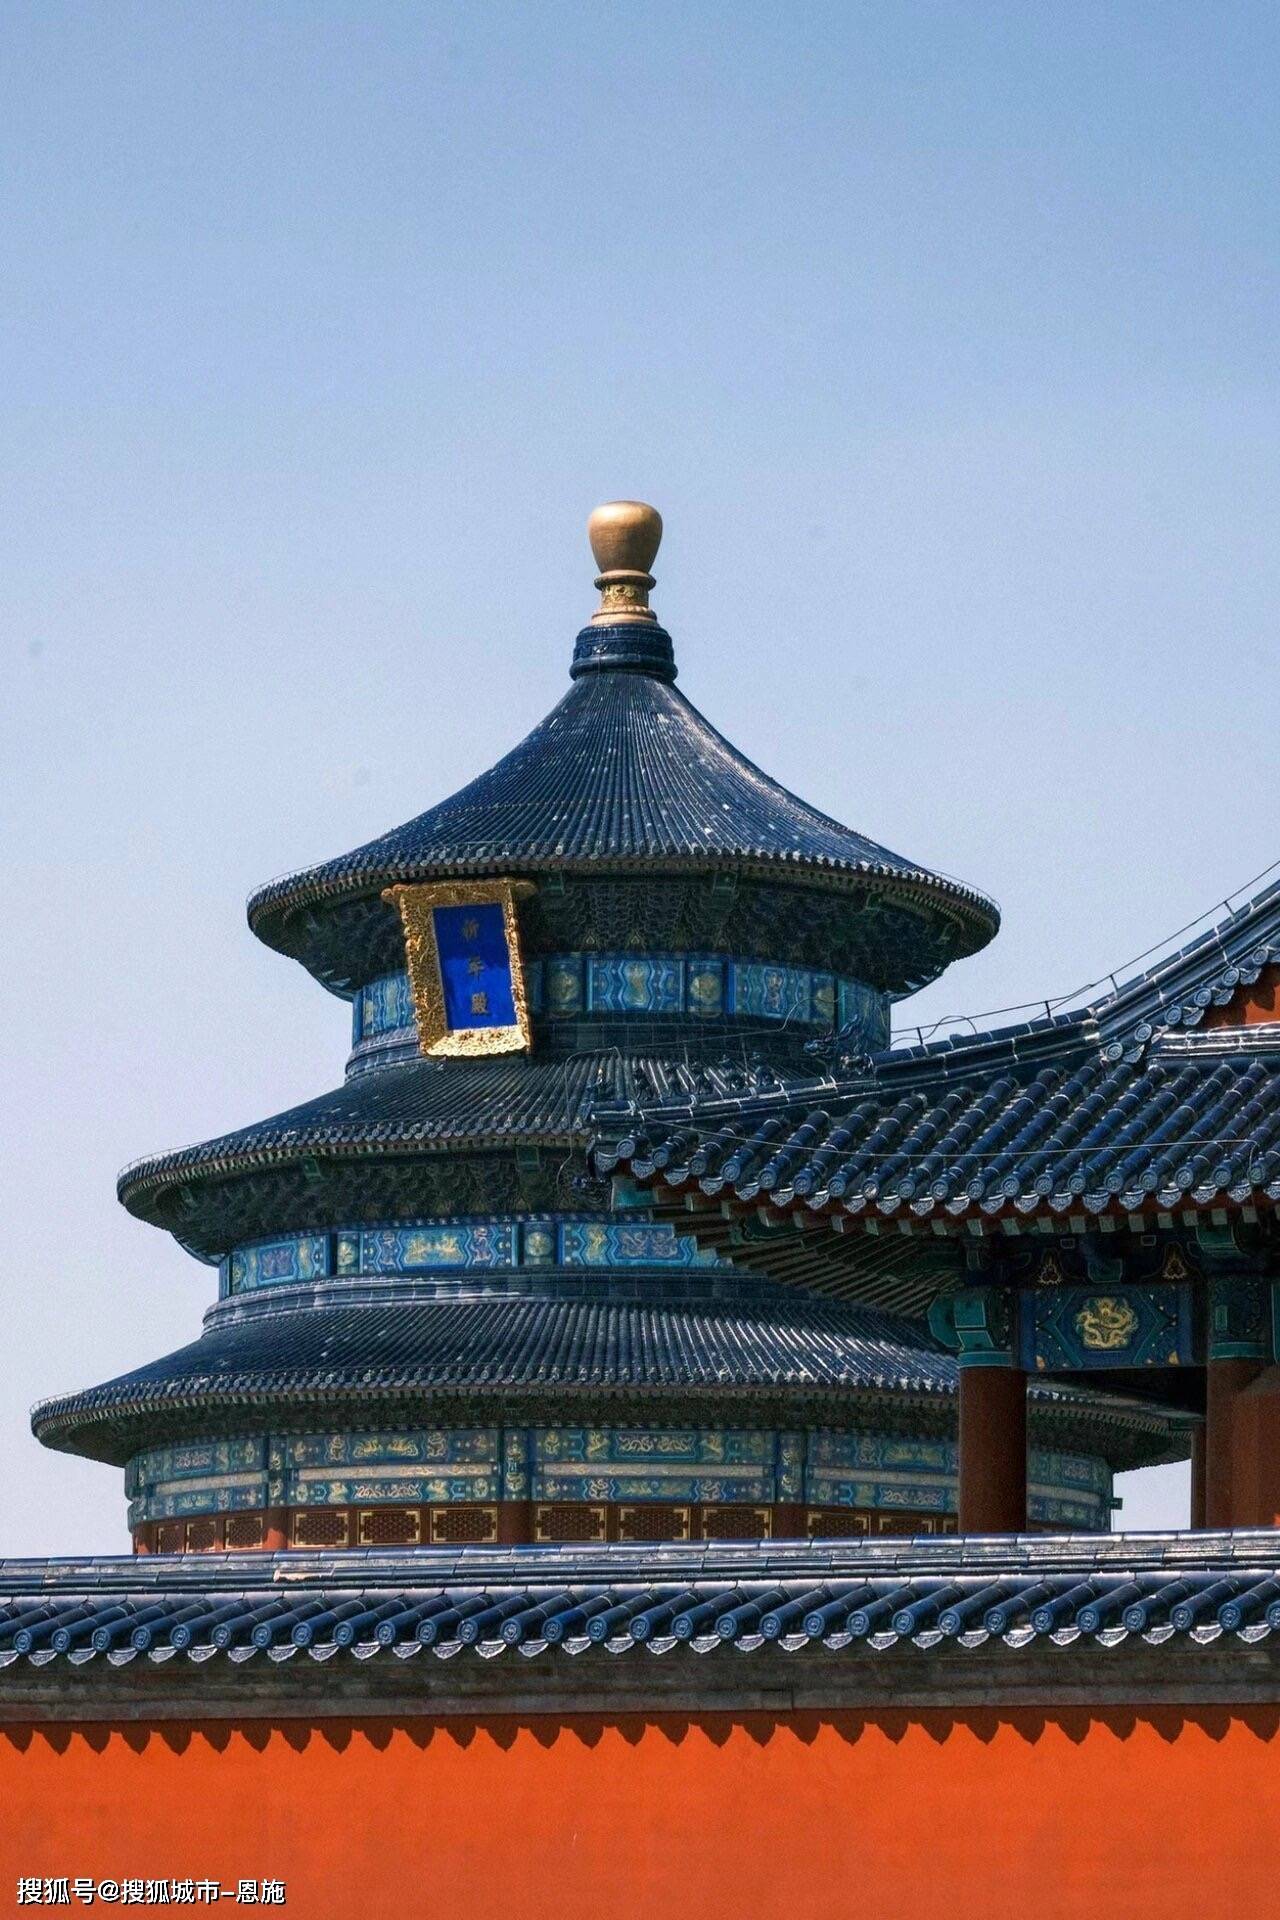 北京故宫旅游跟团五天四晚报价多少,去北京旅游有什么需要注意的看这